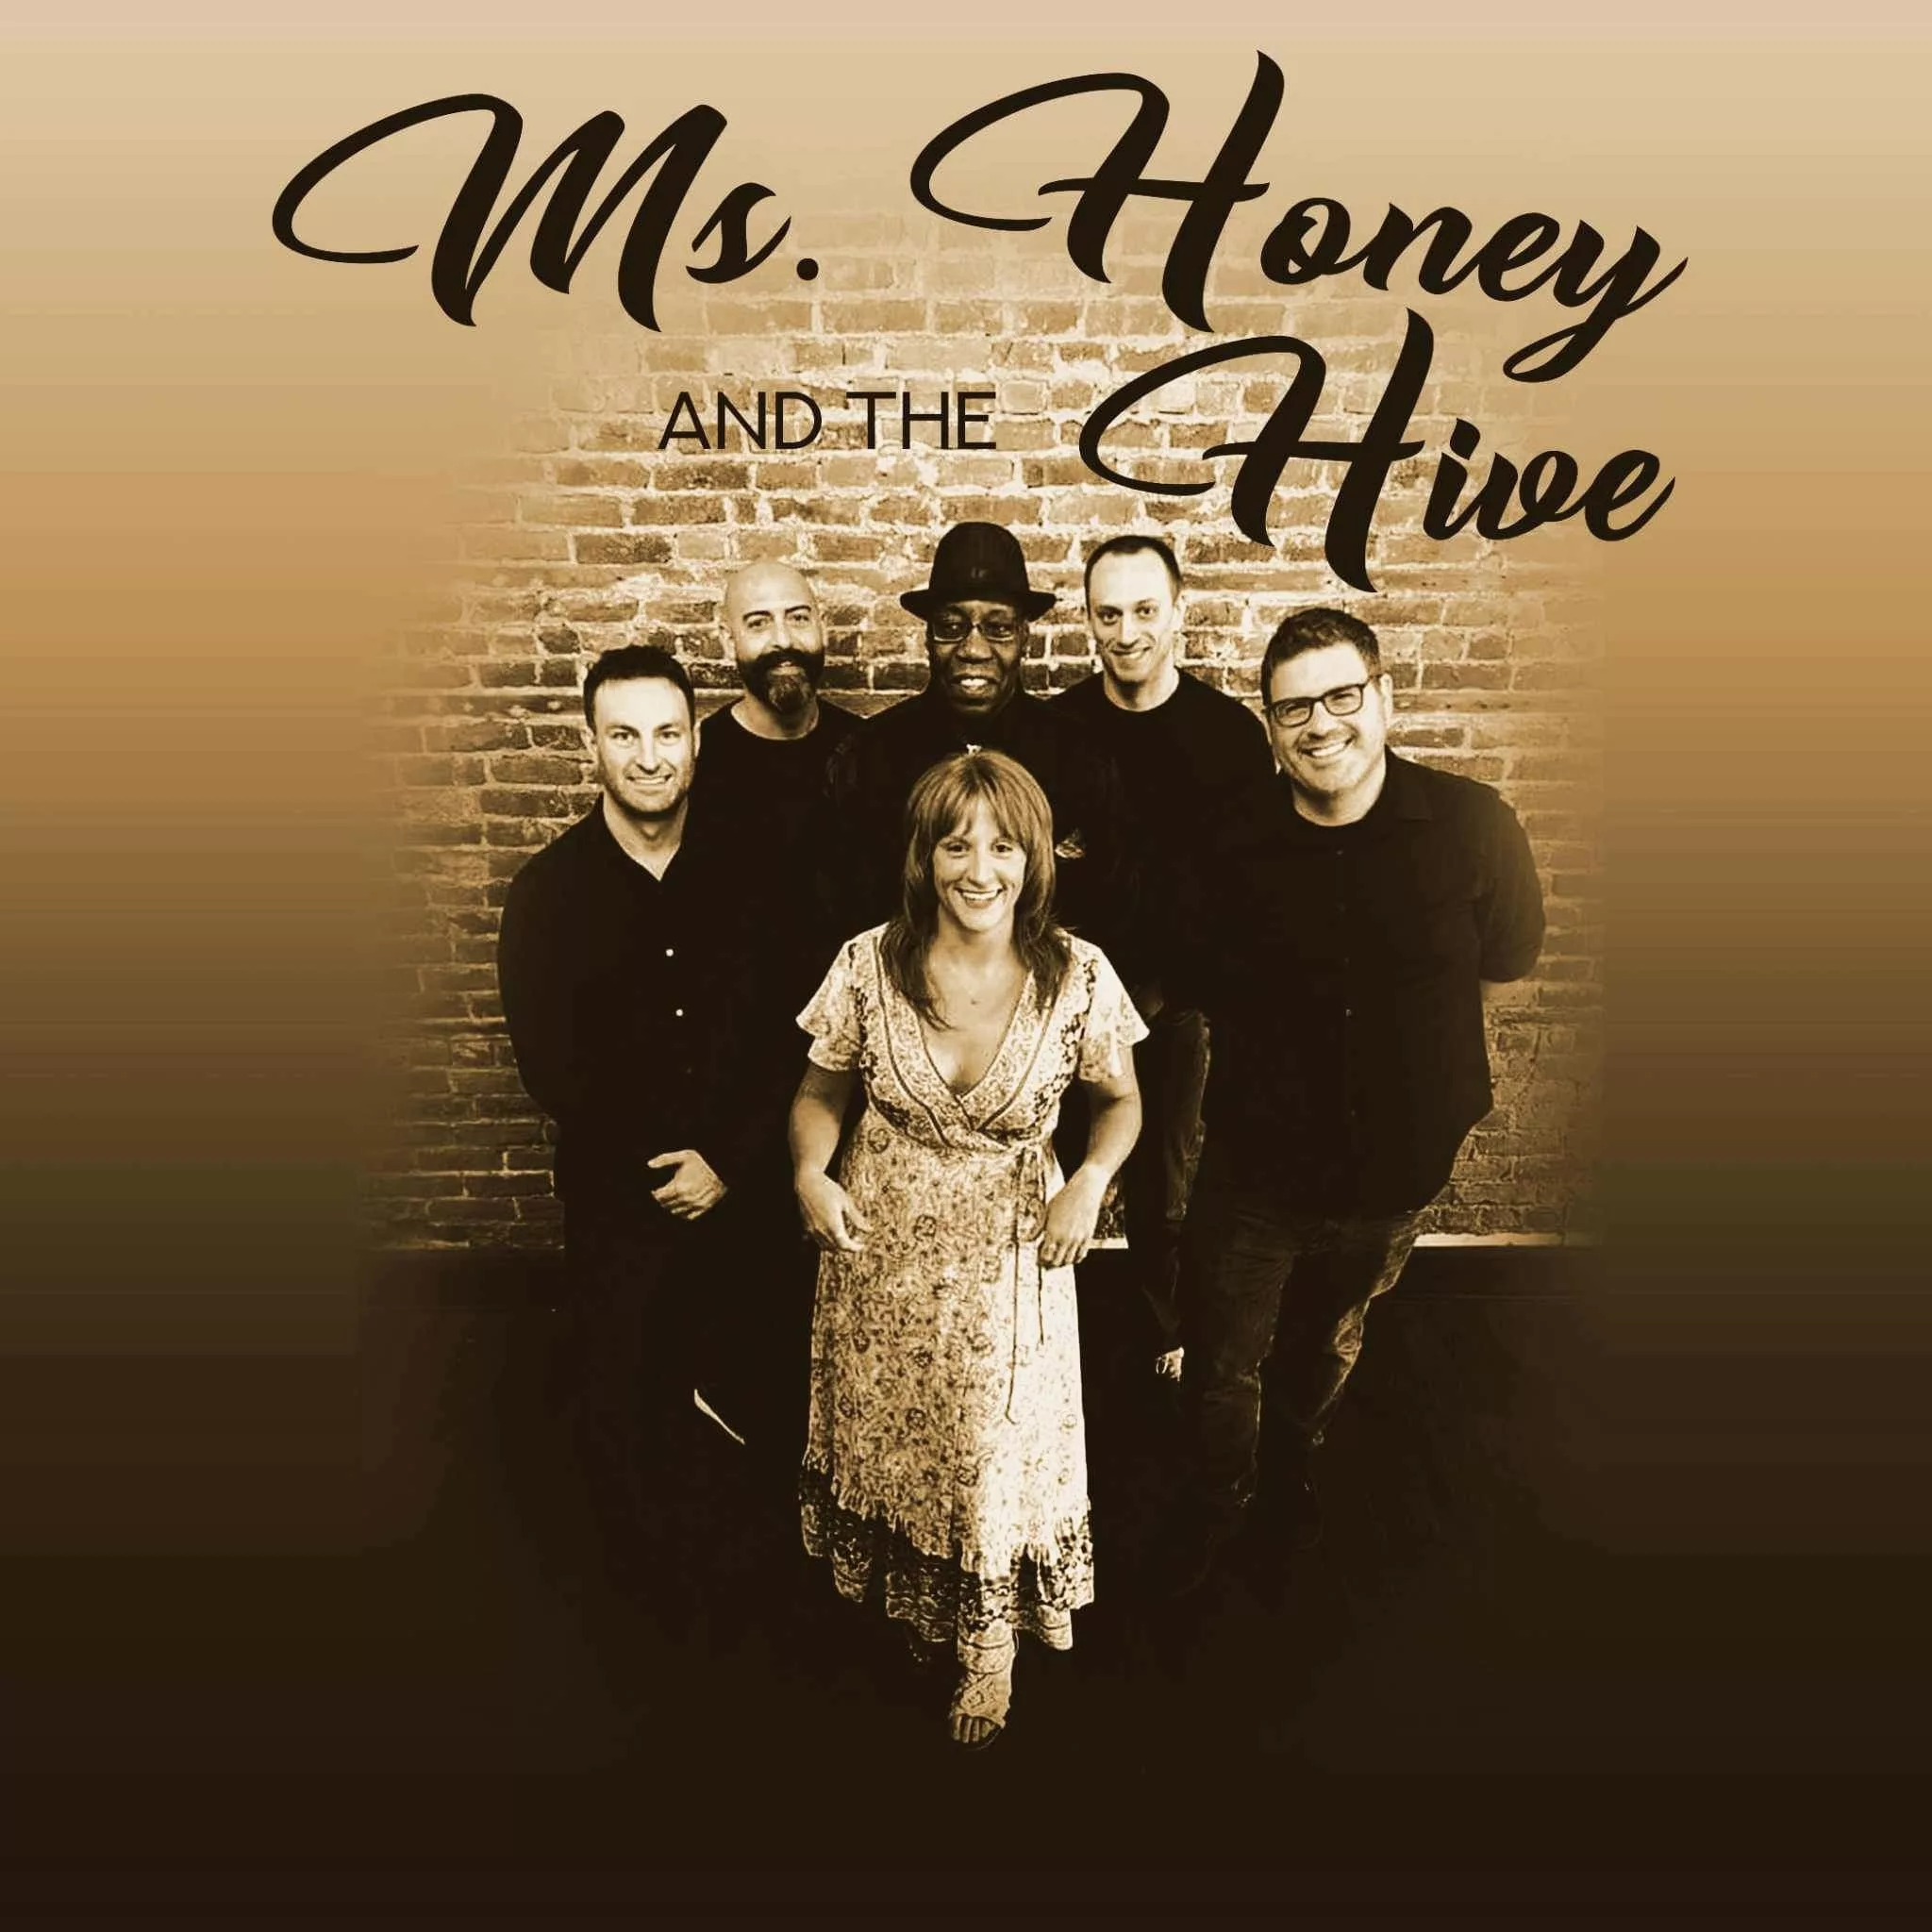 Ms. Honey and the Hive at the John Barleycorn